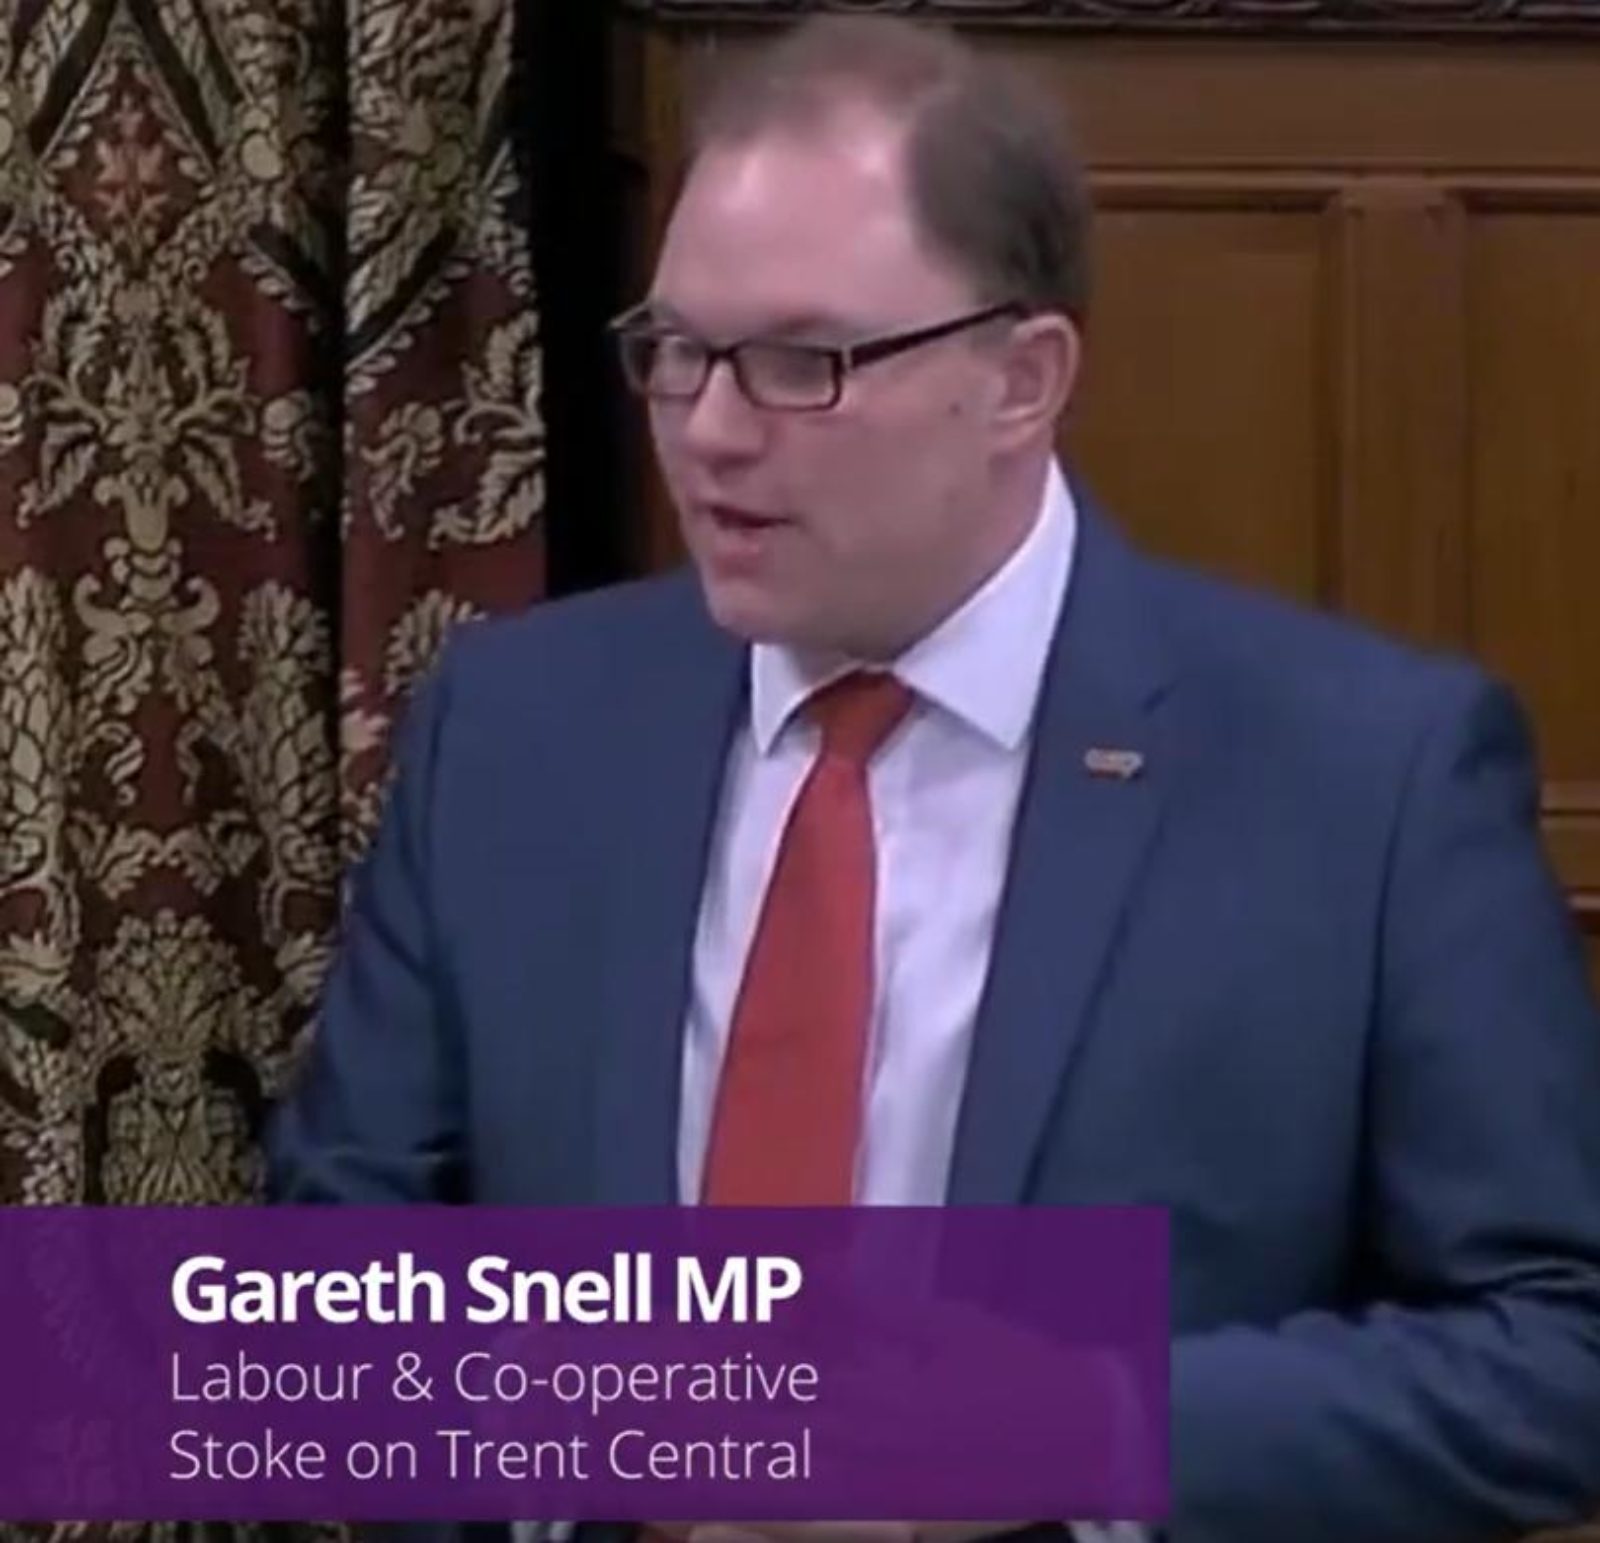 Gareth Snell MP